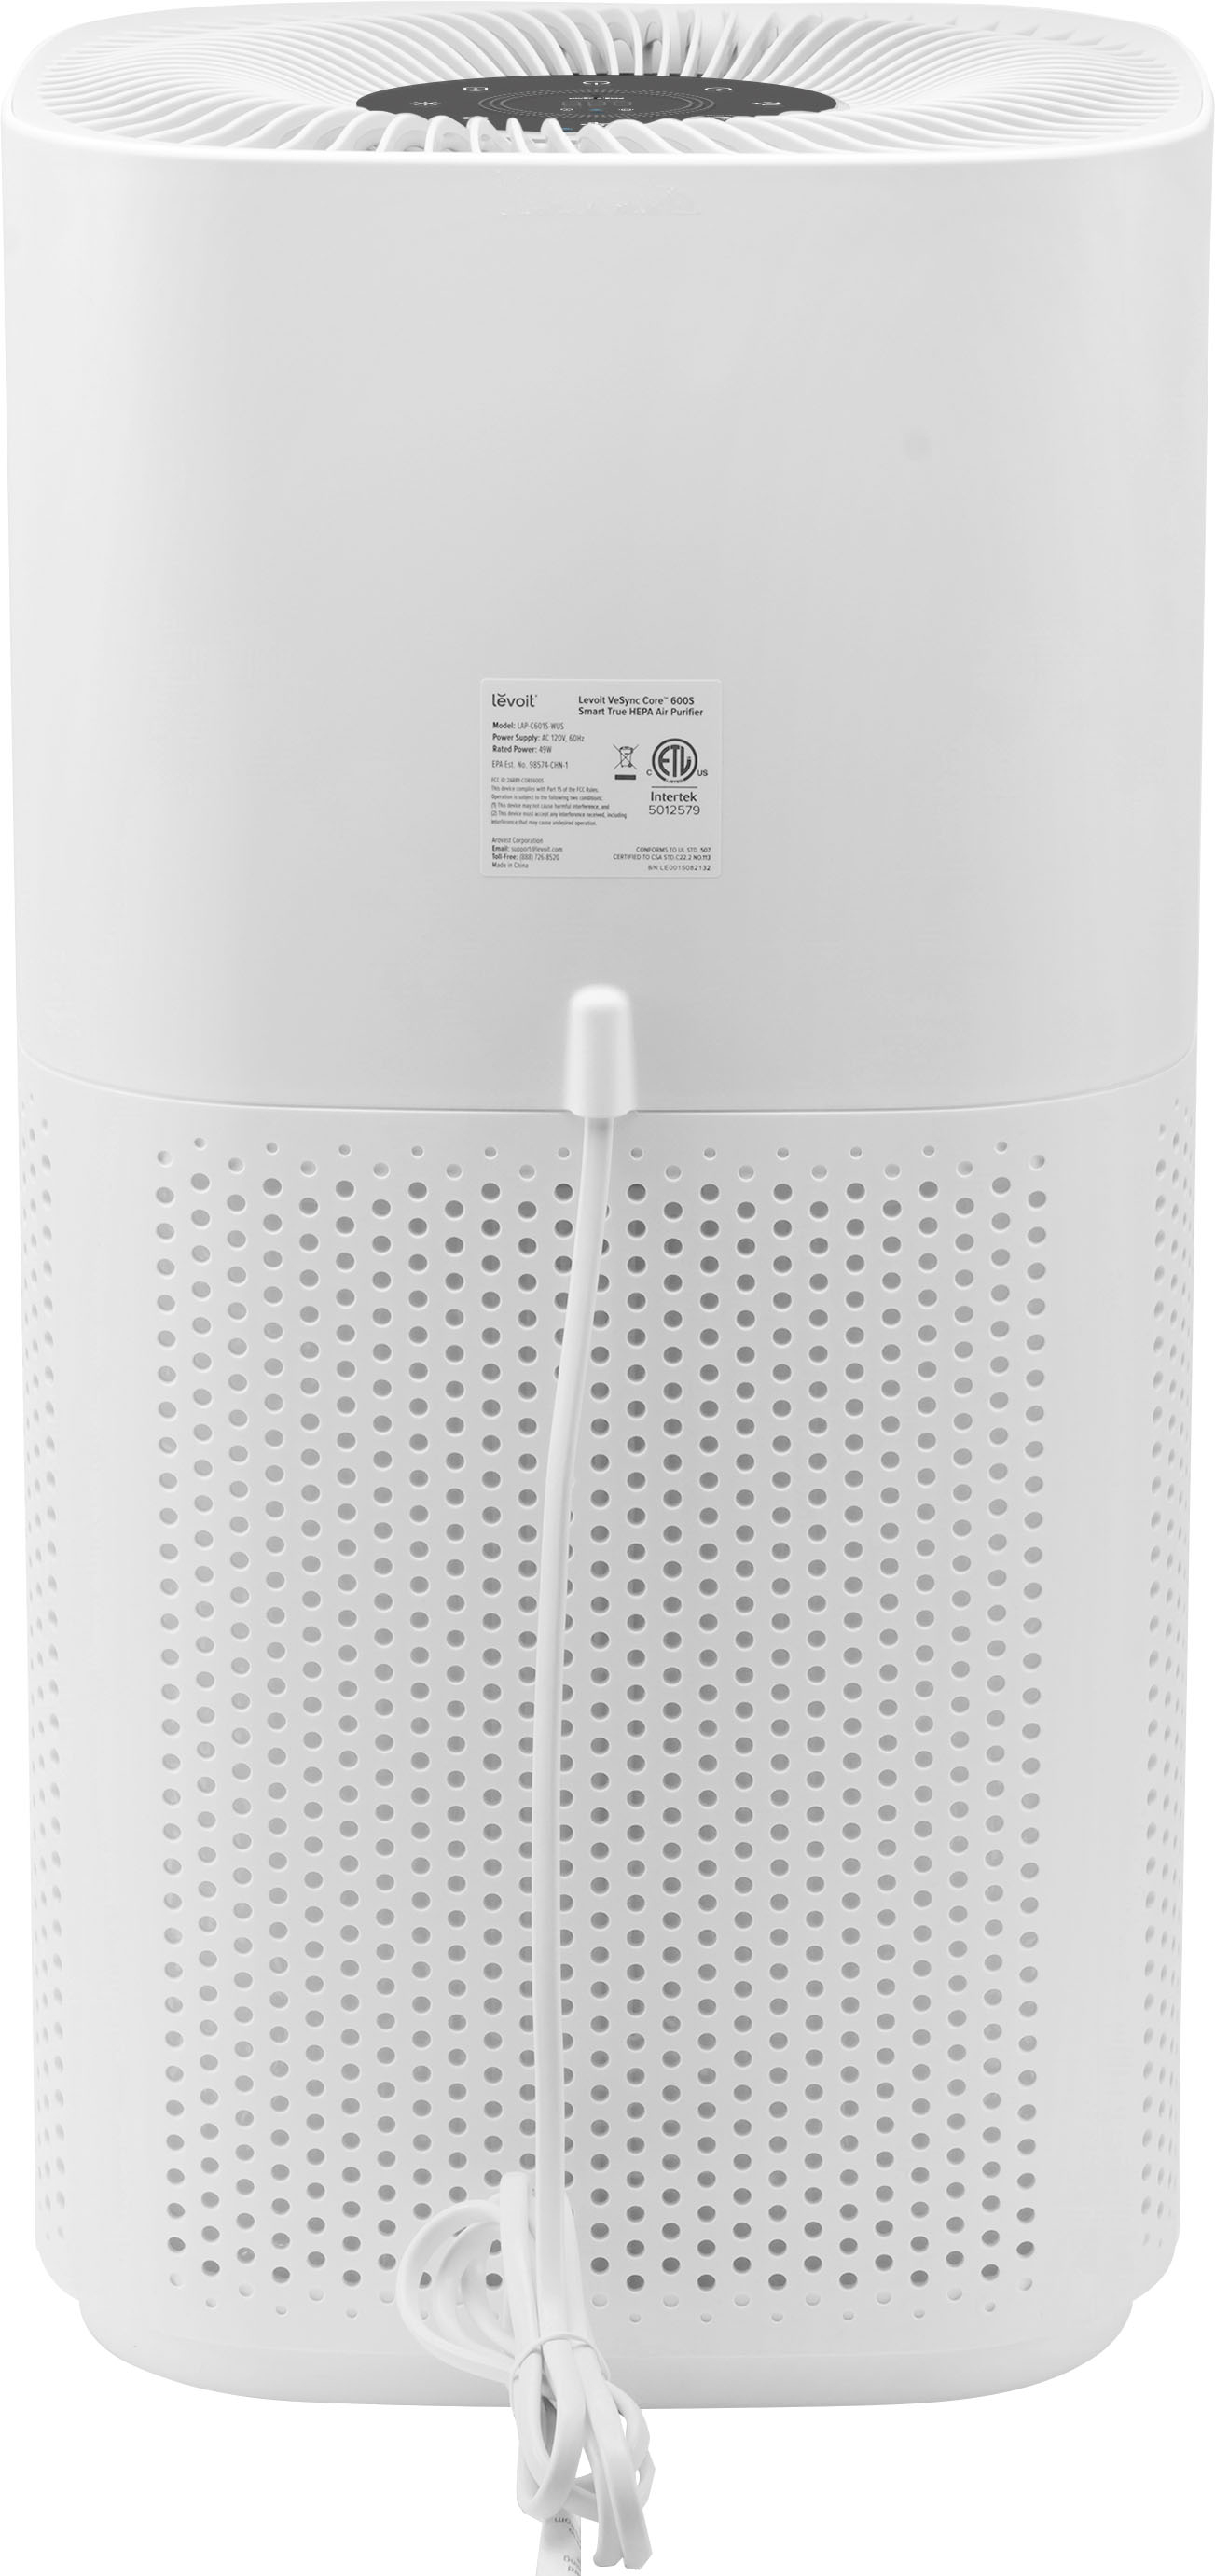 Levoit Core 600S® Smart Air Purifier